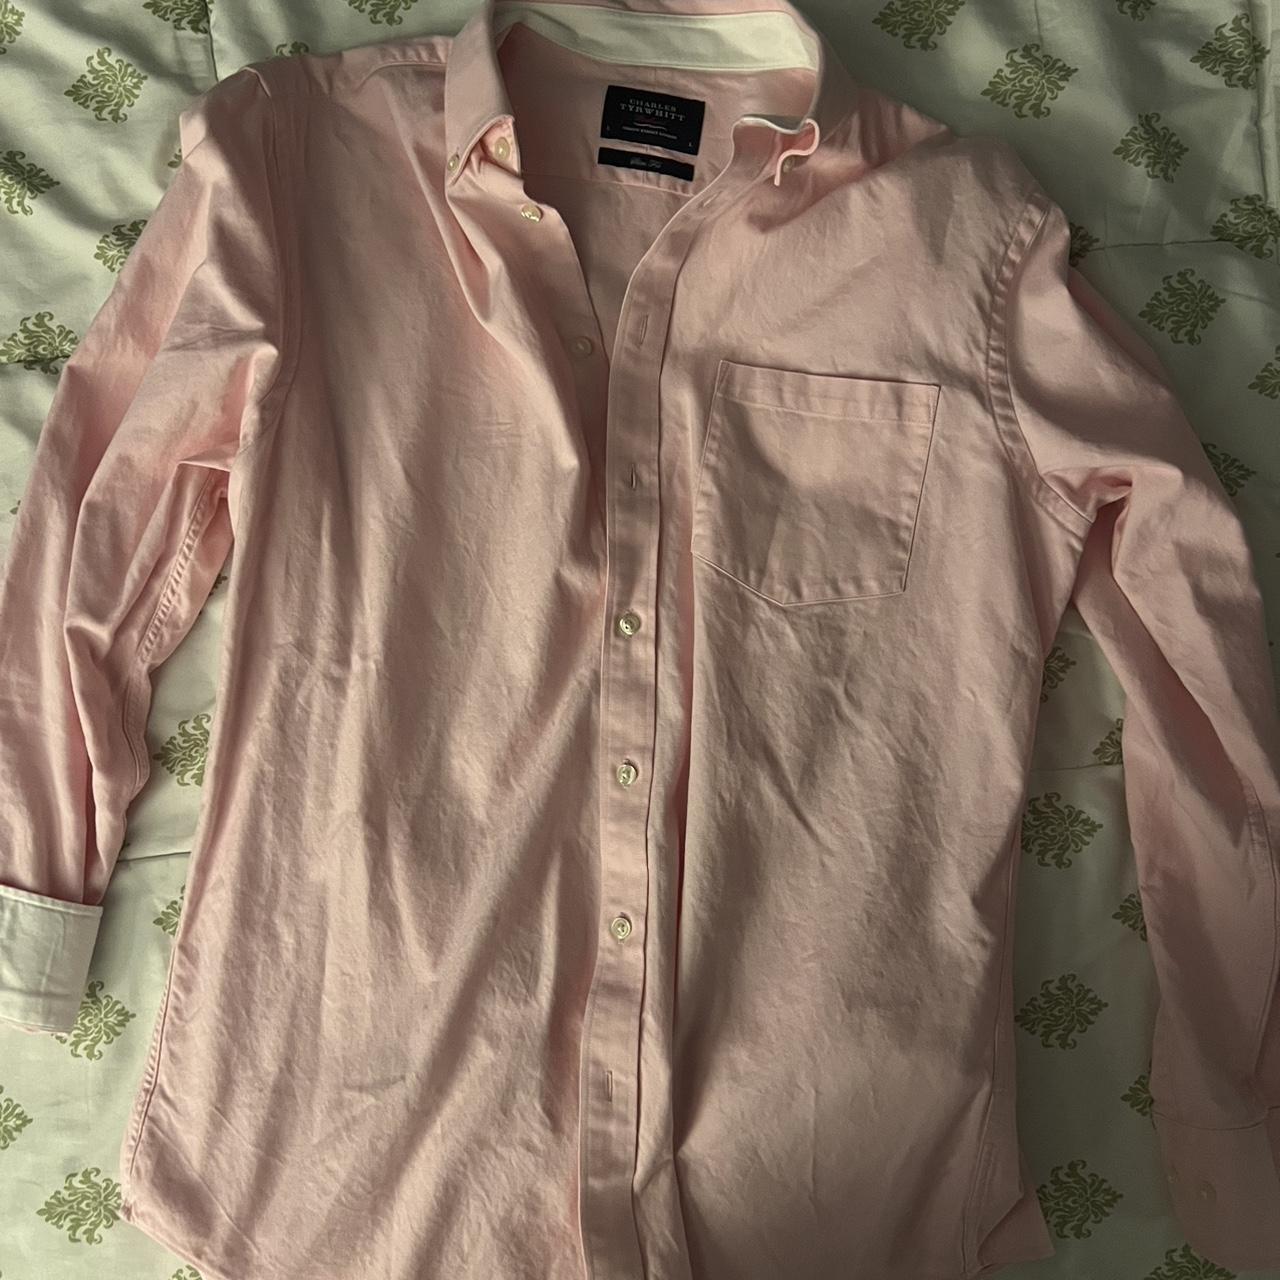 Charles Tyrwhitt Men's Pink Shirt